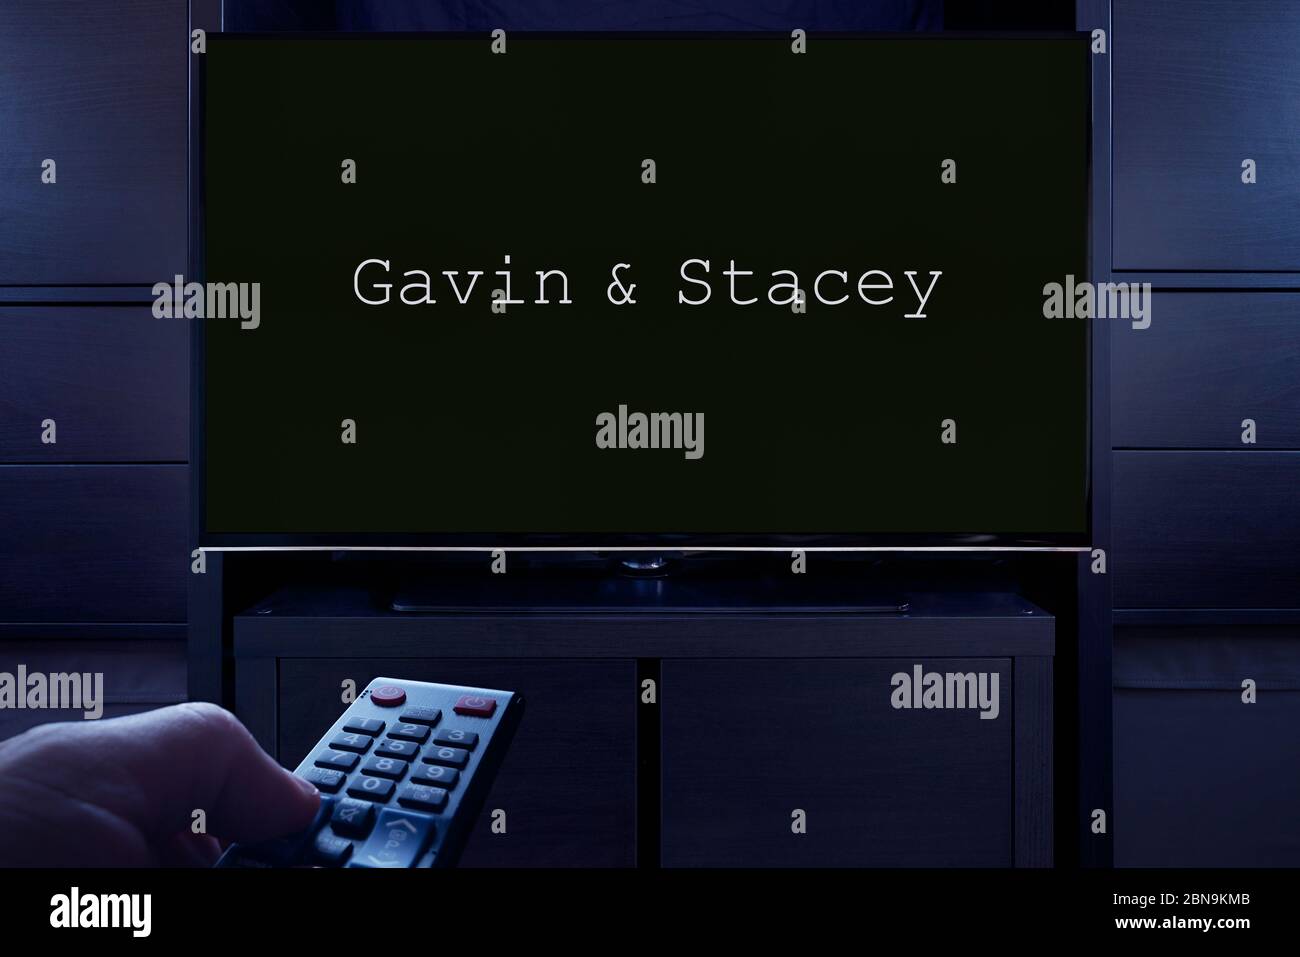 Ein Mann zeigt eine Fernbedienung auf den Fernseher, der den Hauptbildschirm von Gavin & Stacey anzeigt (nur redaktionelle Verwendung). Stockfoto